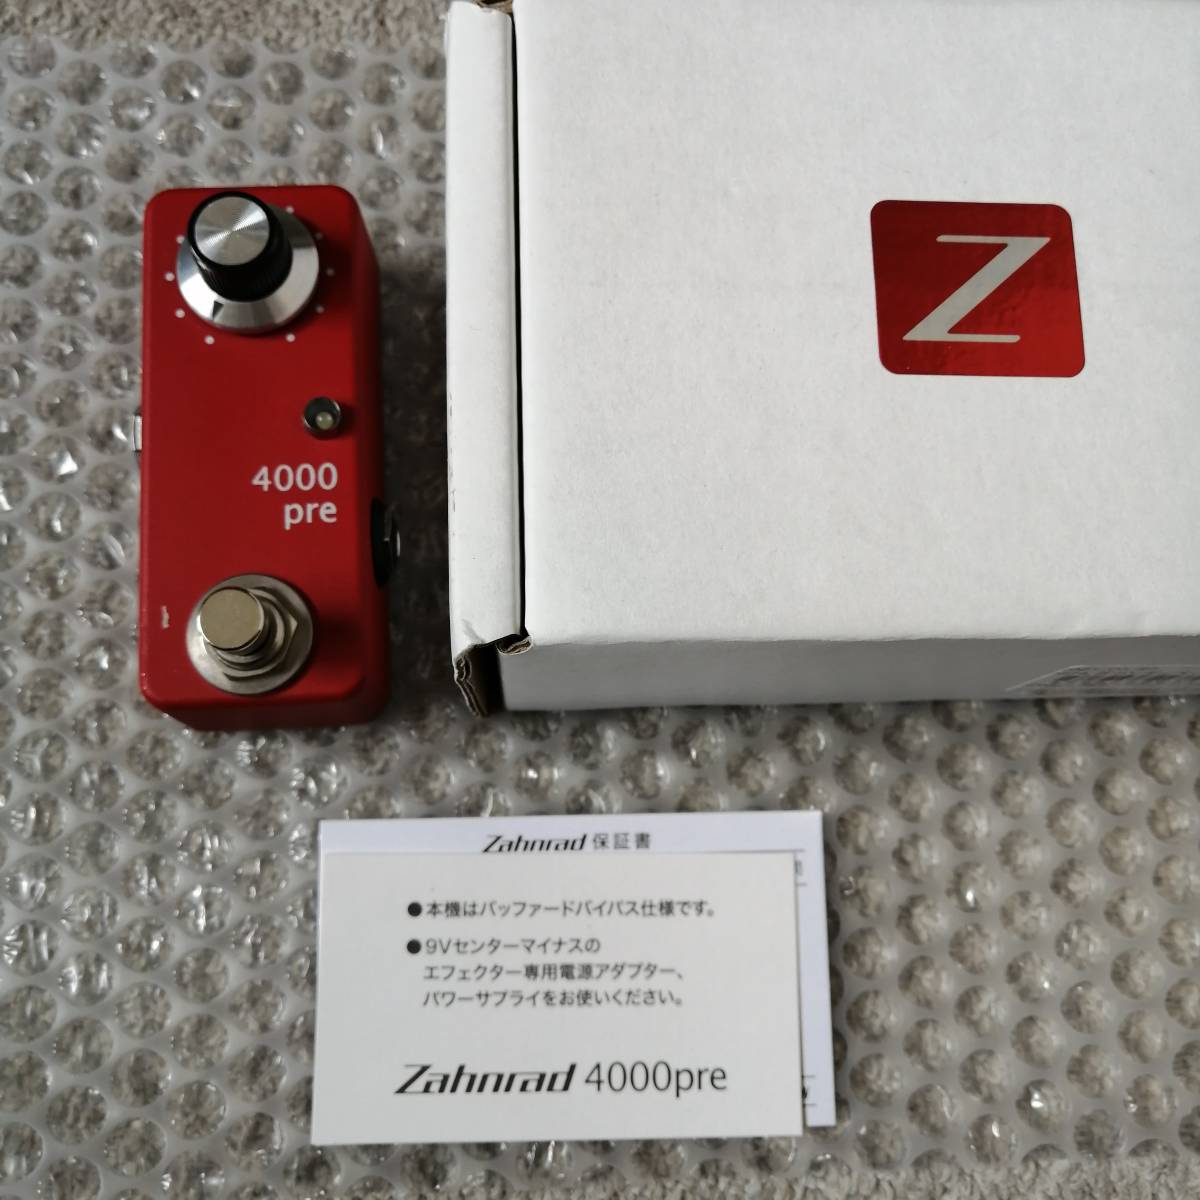 Zahnrad 4000pre 限定 Red ブースター www.grupo-syz.com